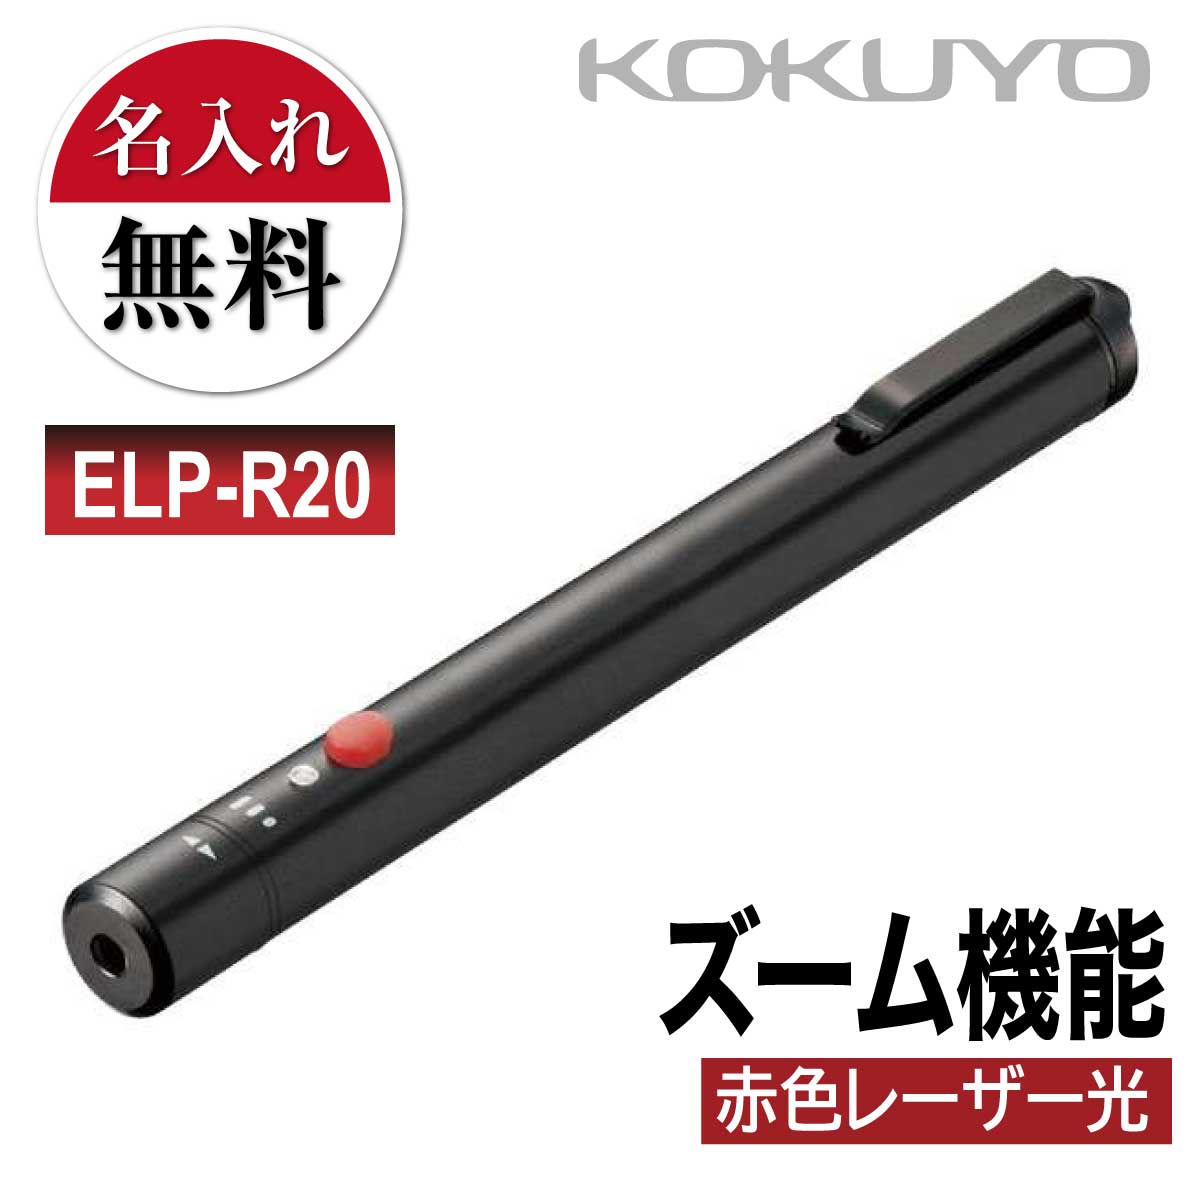 名入れ 名入れ無料 [コクヨ] 赤色 レーザーポインター ELP-R20 ペン型 照射サイズ ズーム プレゼン 会議 プレゼンテーション